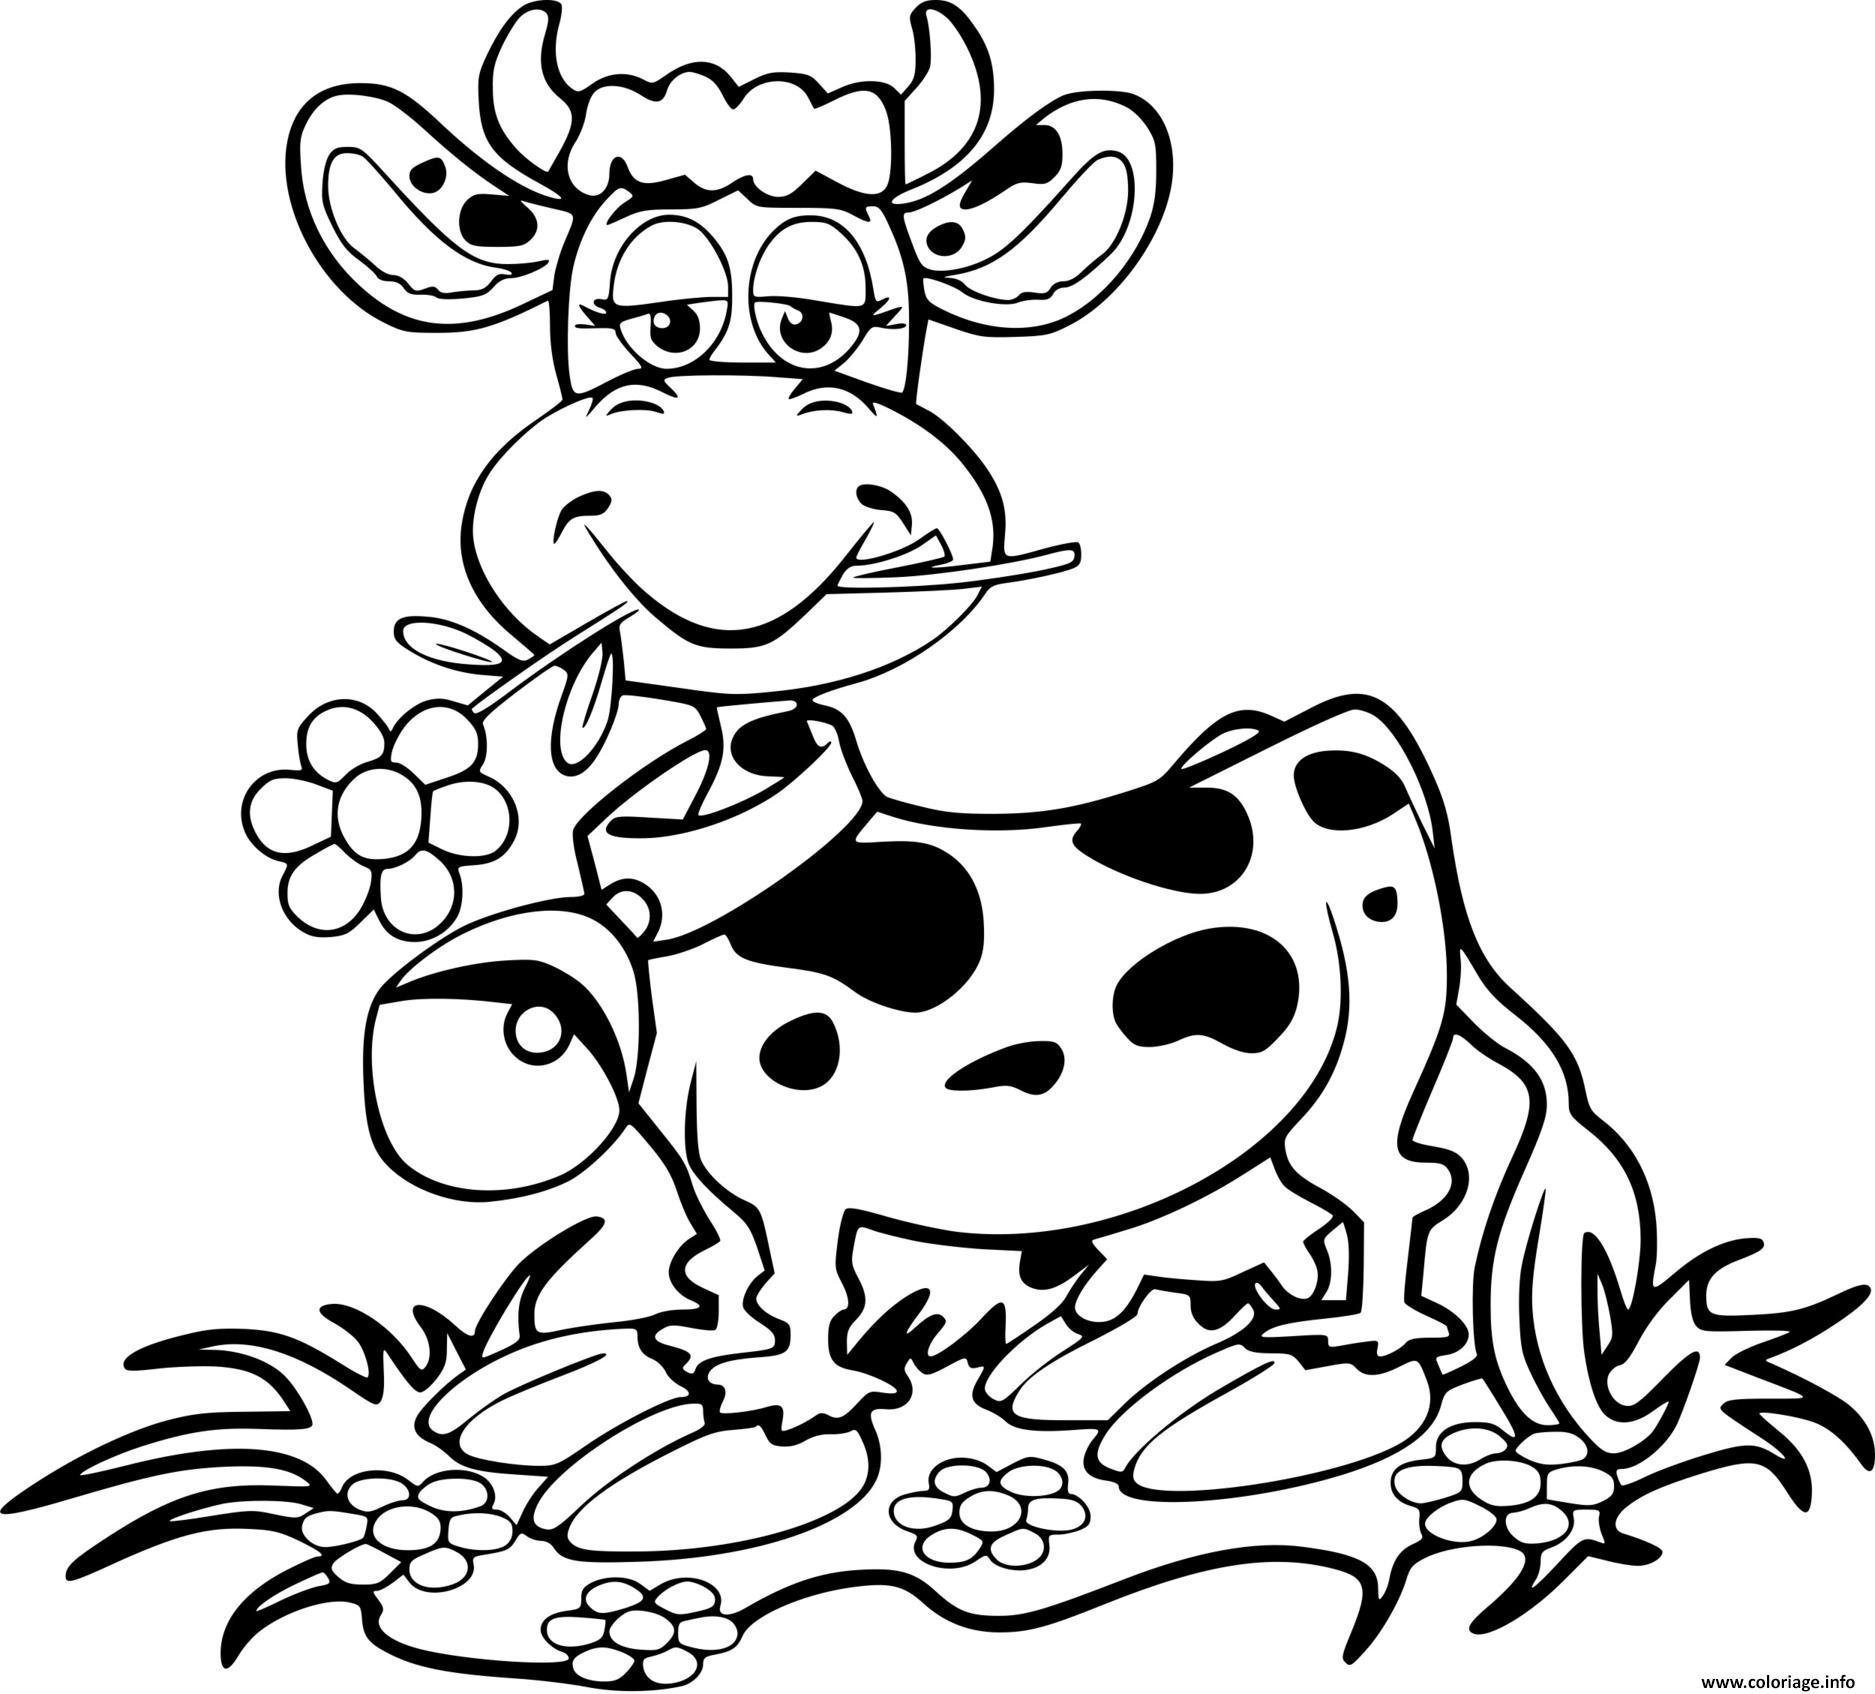 Распечатать коровку раскраску. Раскраска корова. Корова раскраска для детей. Коровка раскраска для детей. Корова раскраска для малышей.